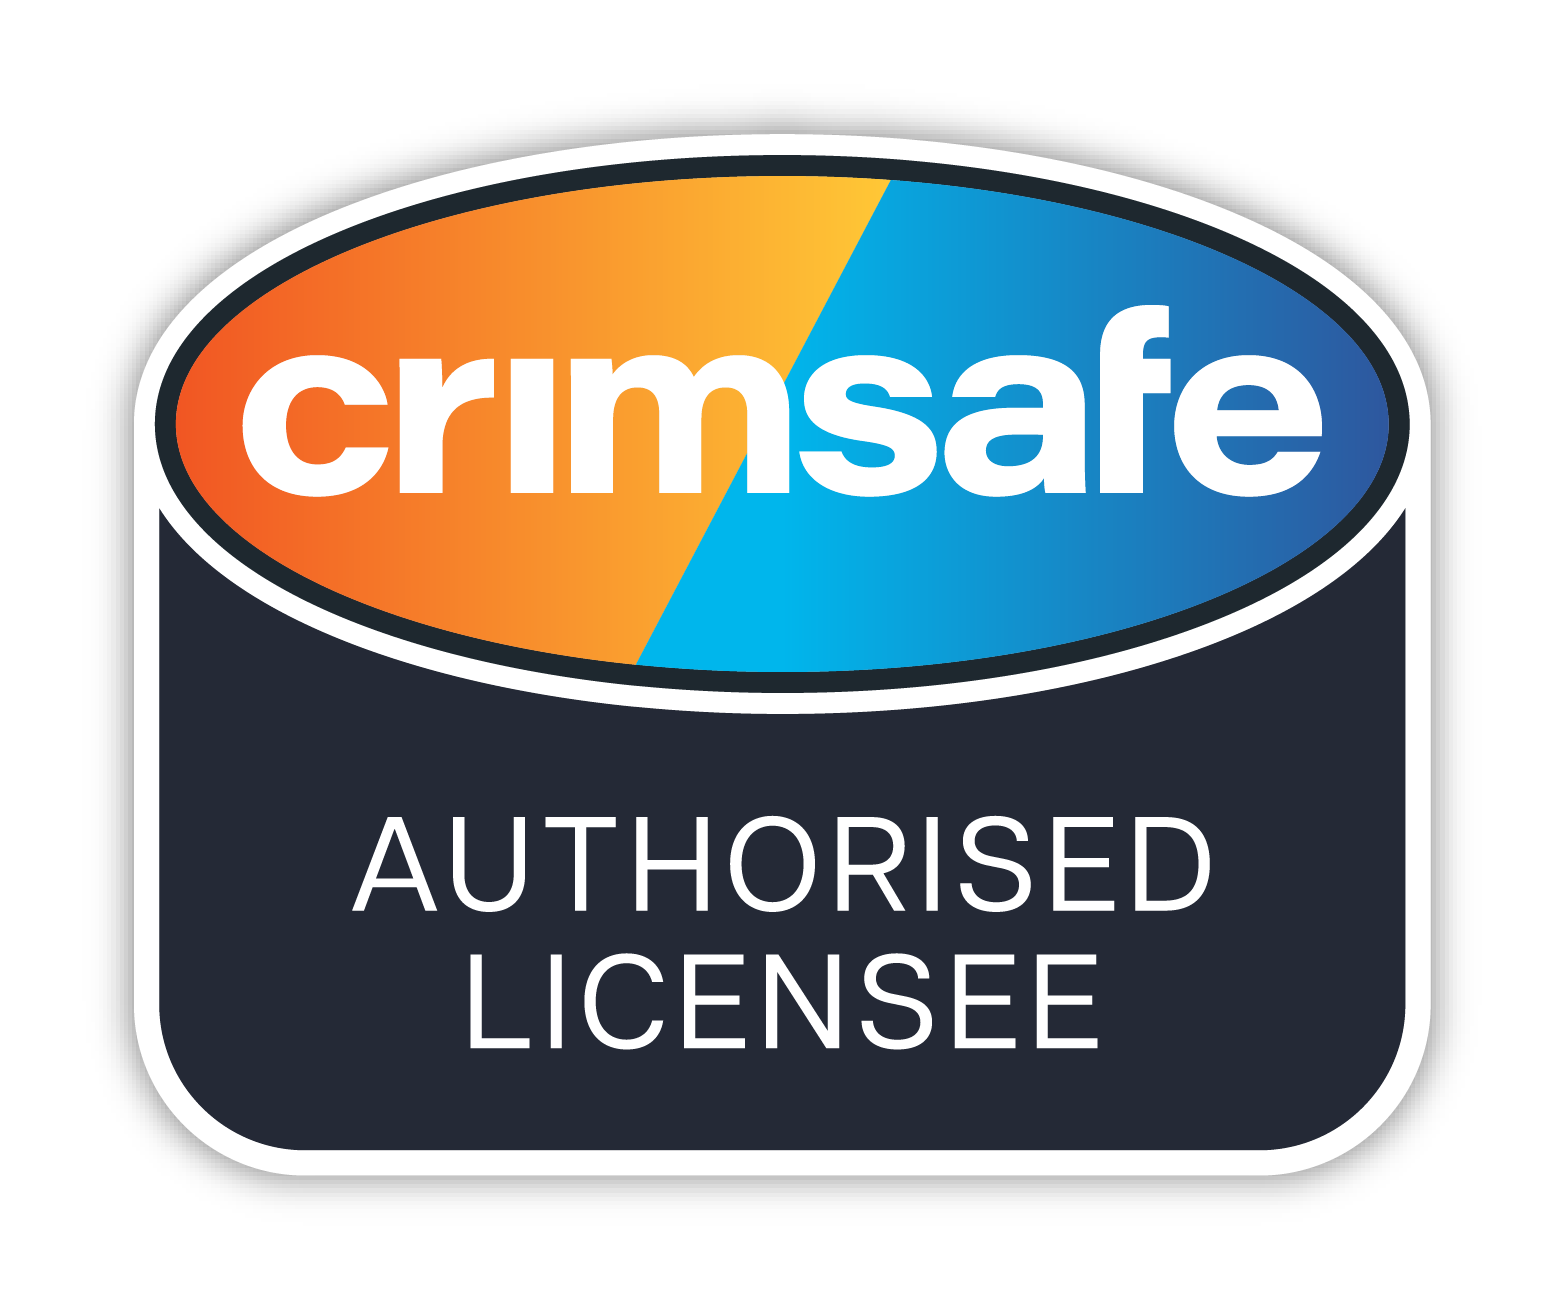 Crimsafe Authorised Licensee